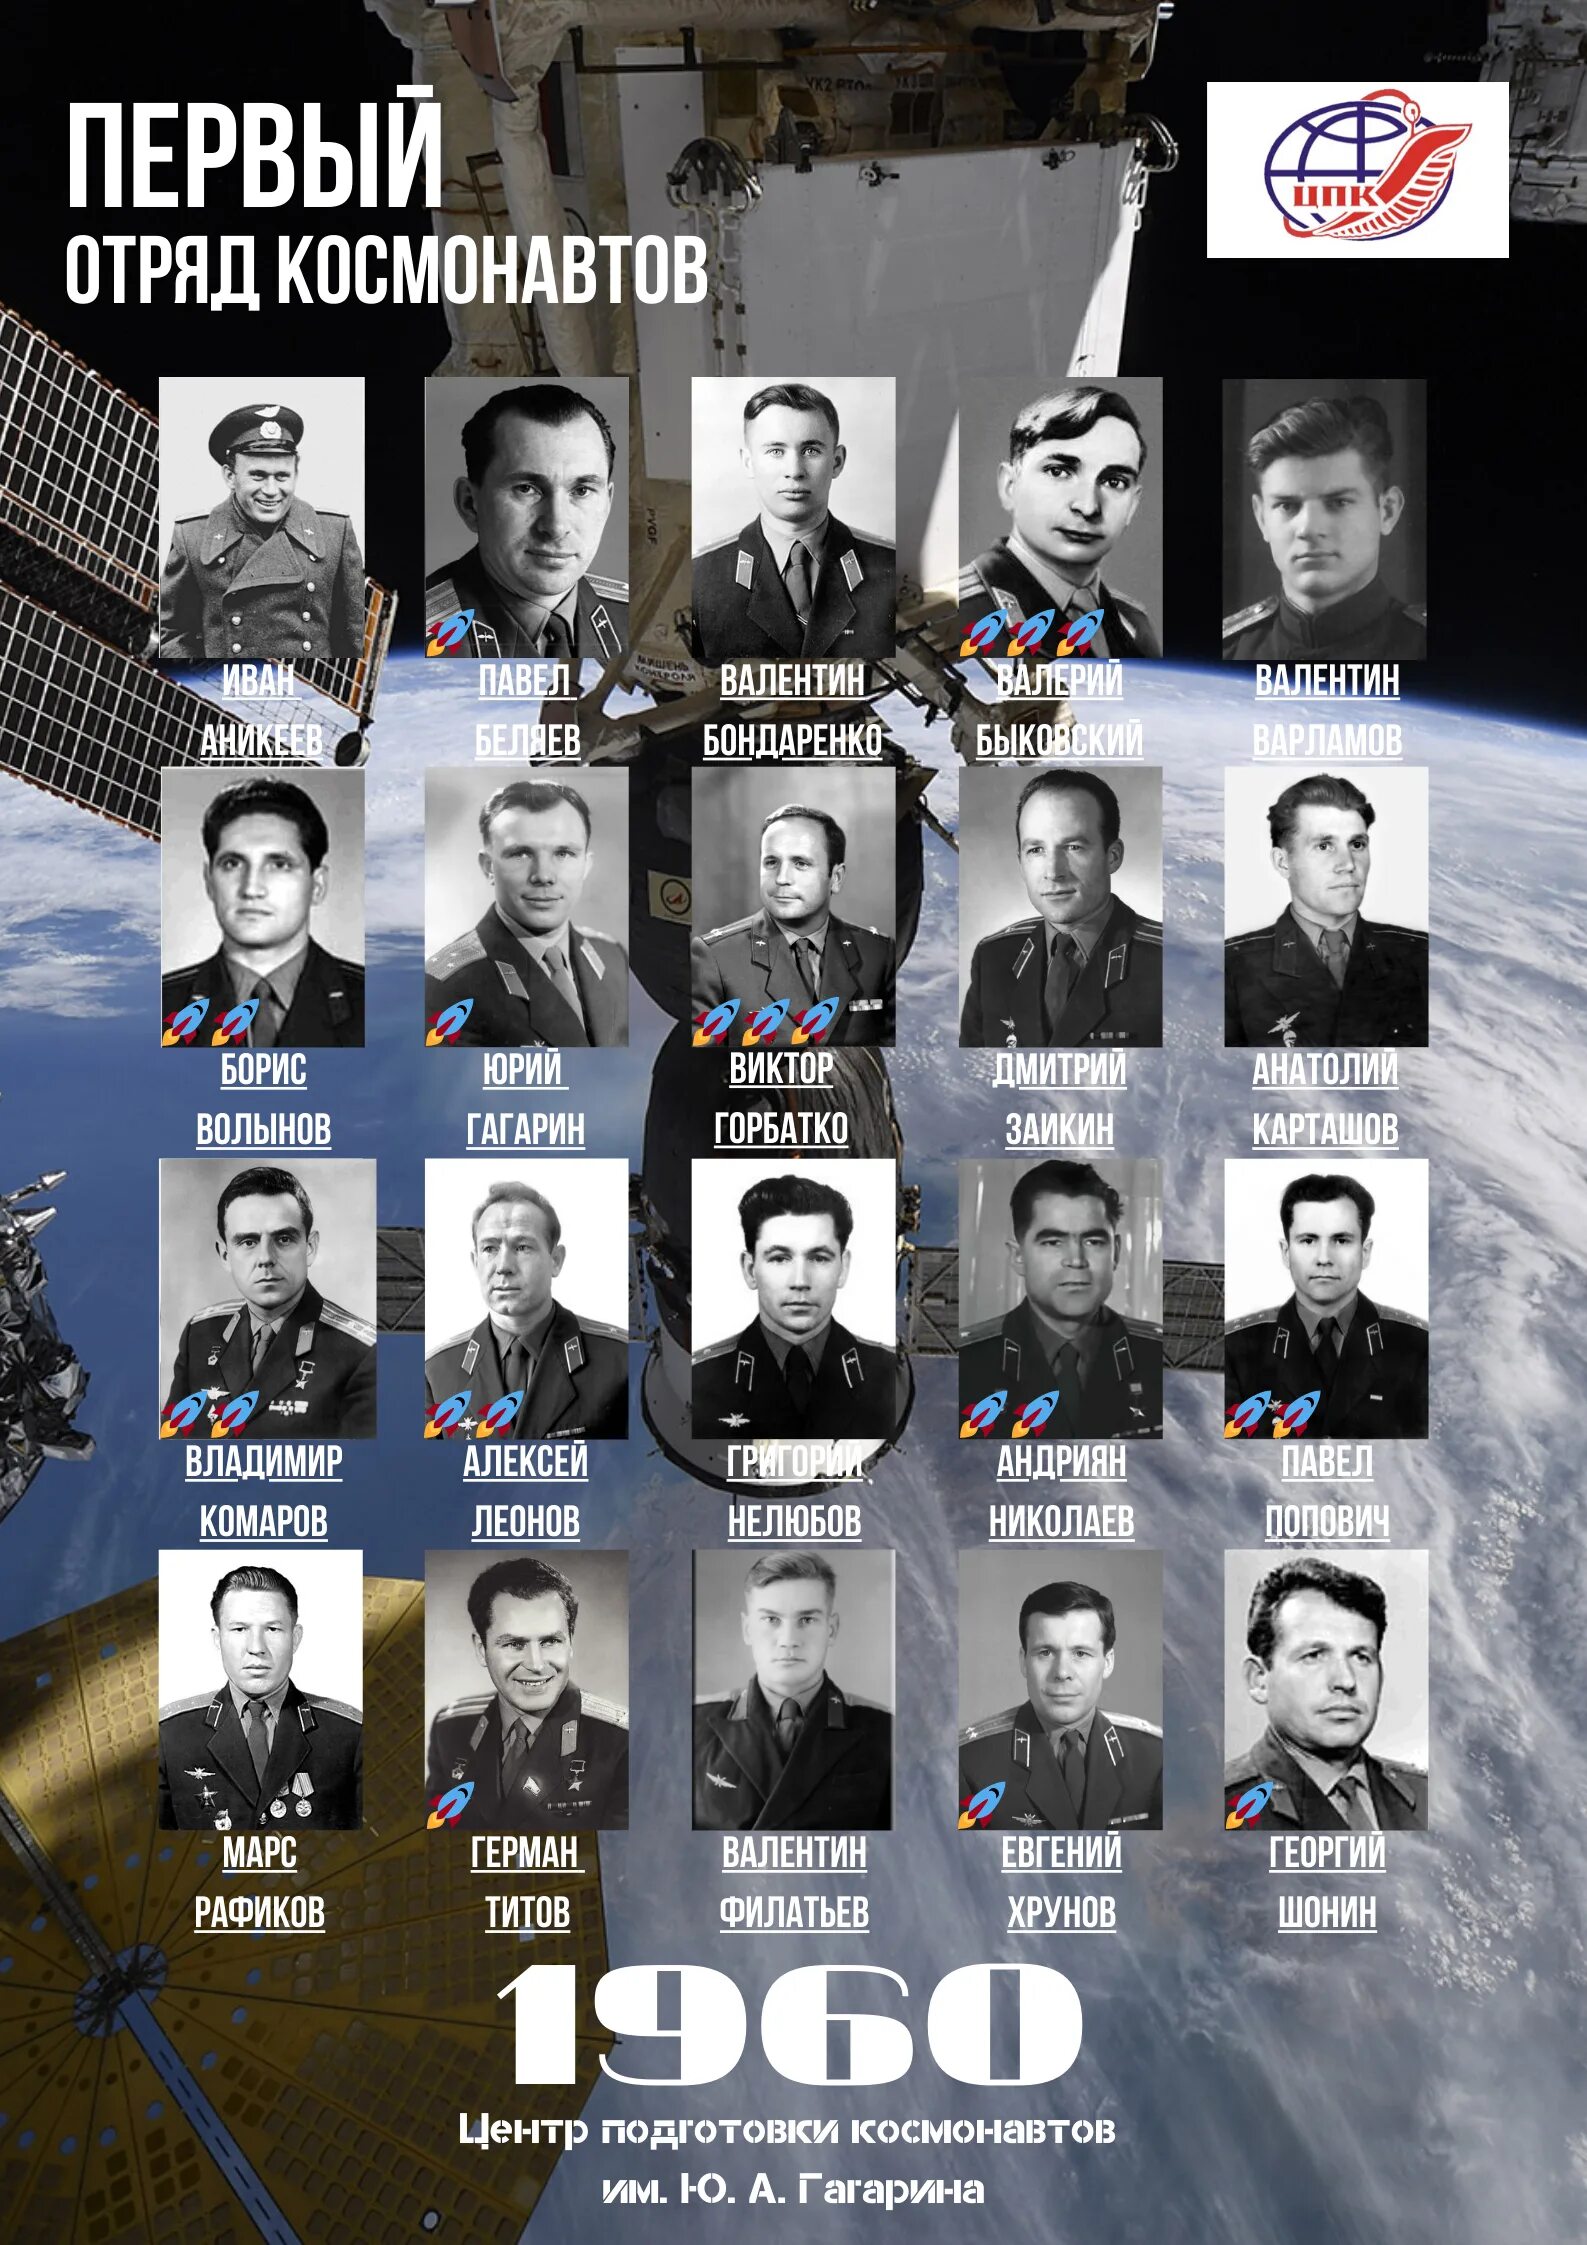 Первый отряд советских космонавтов. Первый отряд Космонавтов 1960 год. Фамилия первого отряда Космонавтов.